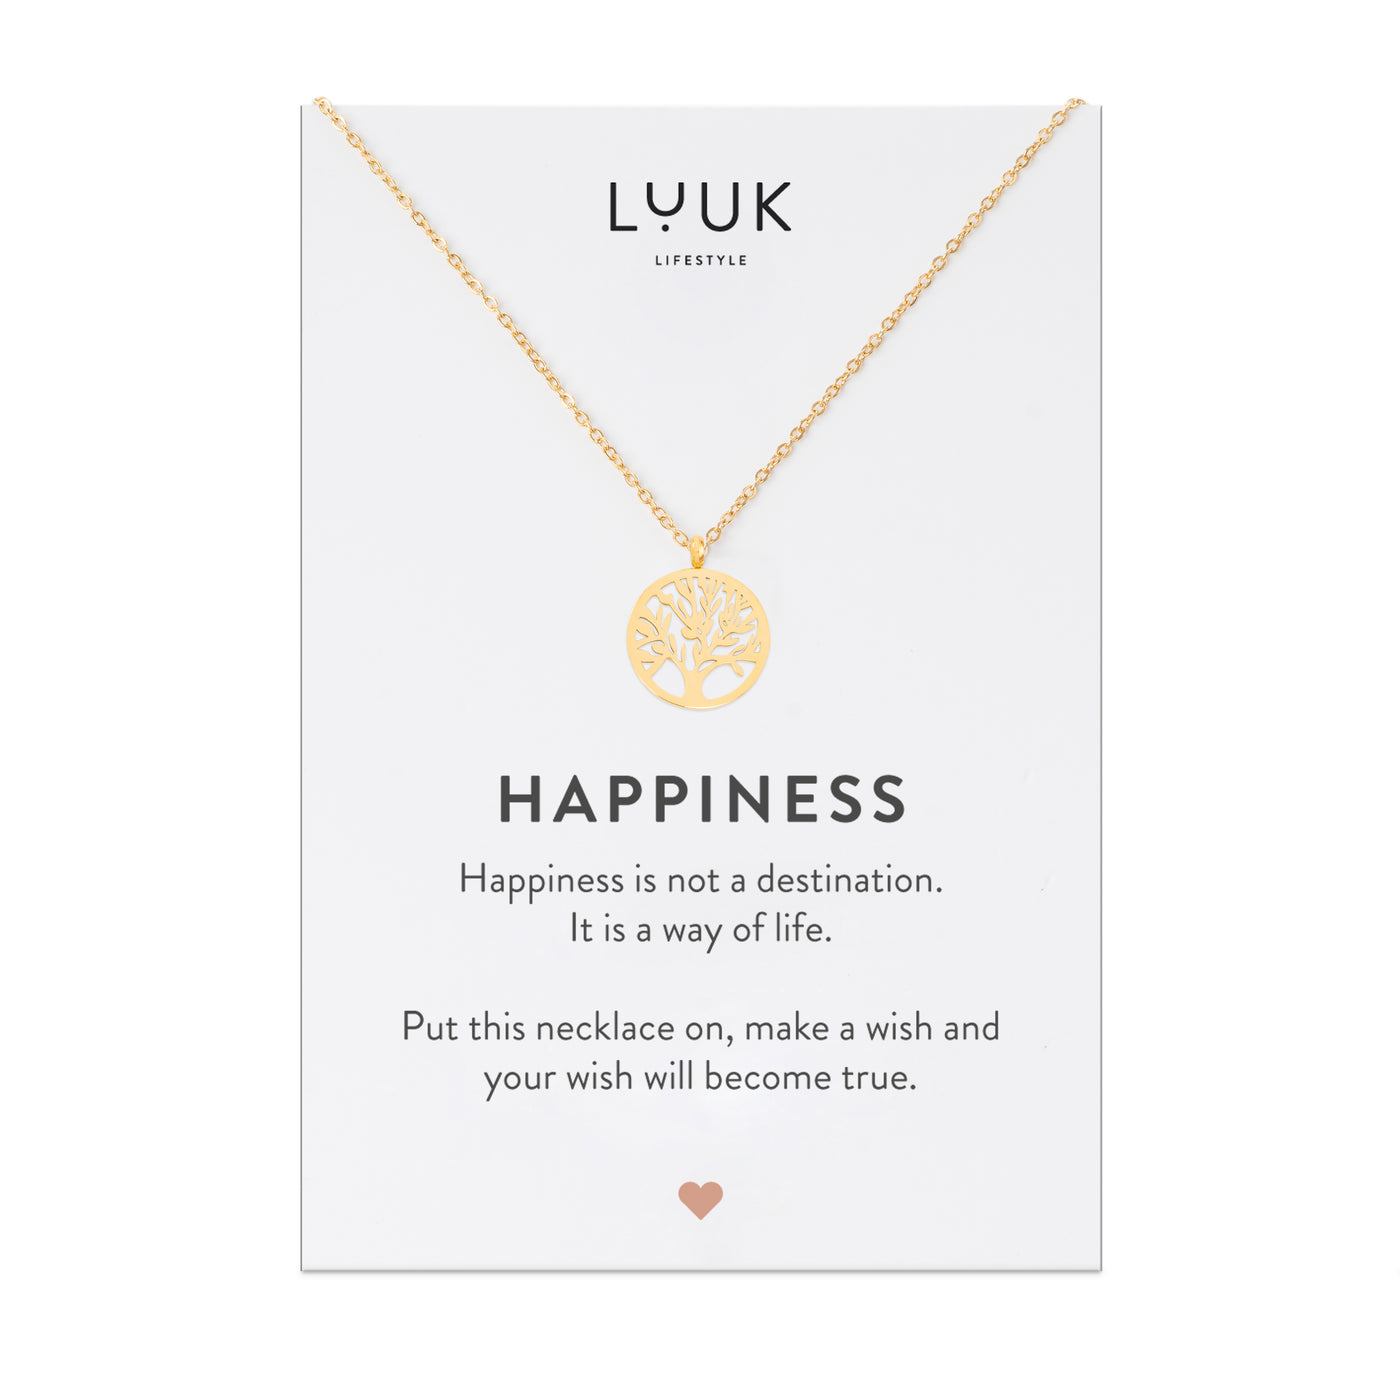 Goldene Halskette mit Lebensbaum Anhänger auf Happiness Spruchkarte von der Marke Luuk Lifestyle